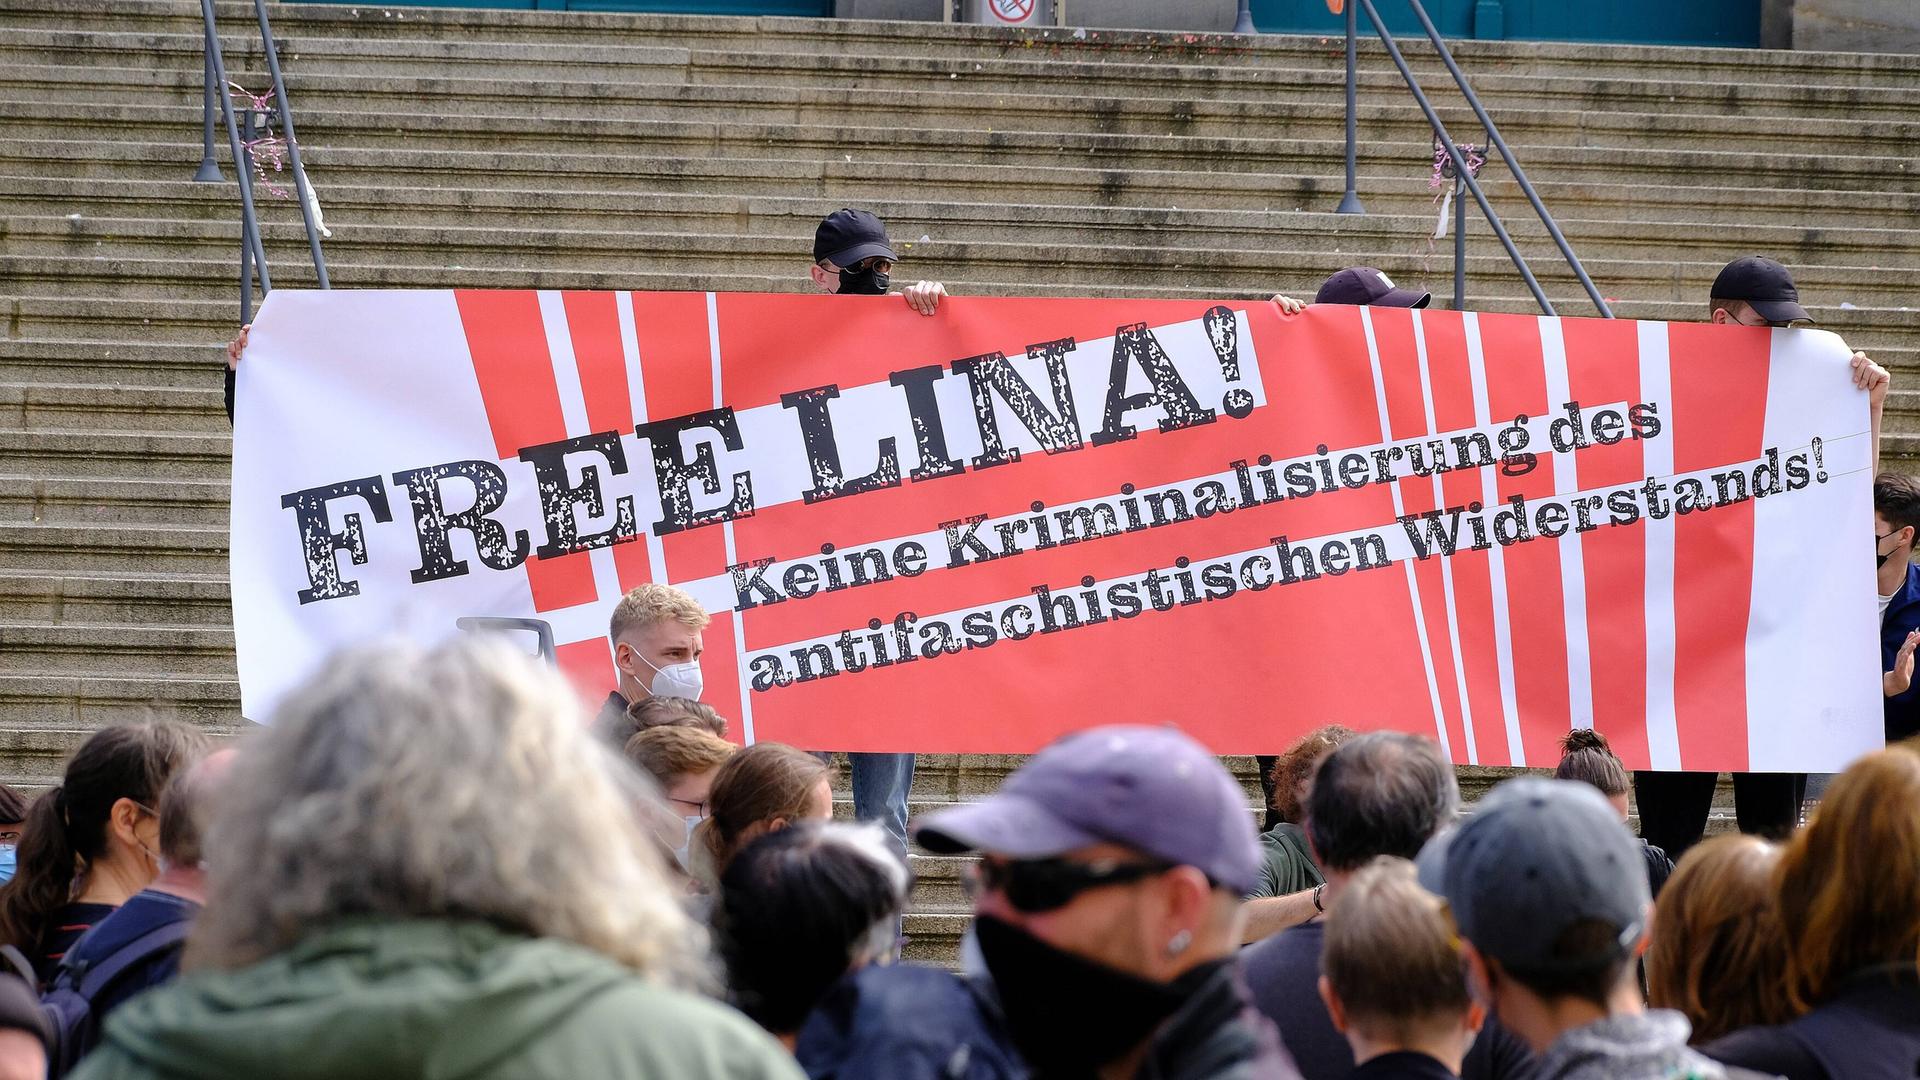 Menschen halten vor Demonstranten am Fuße einer Steintreppe ein großes Plakat hoch, auf dem steht "Free Lina! Keine Kriminalisierung des antifaschistischen Widerstands!"